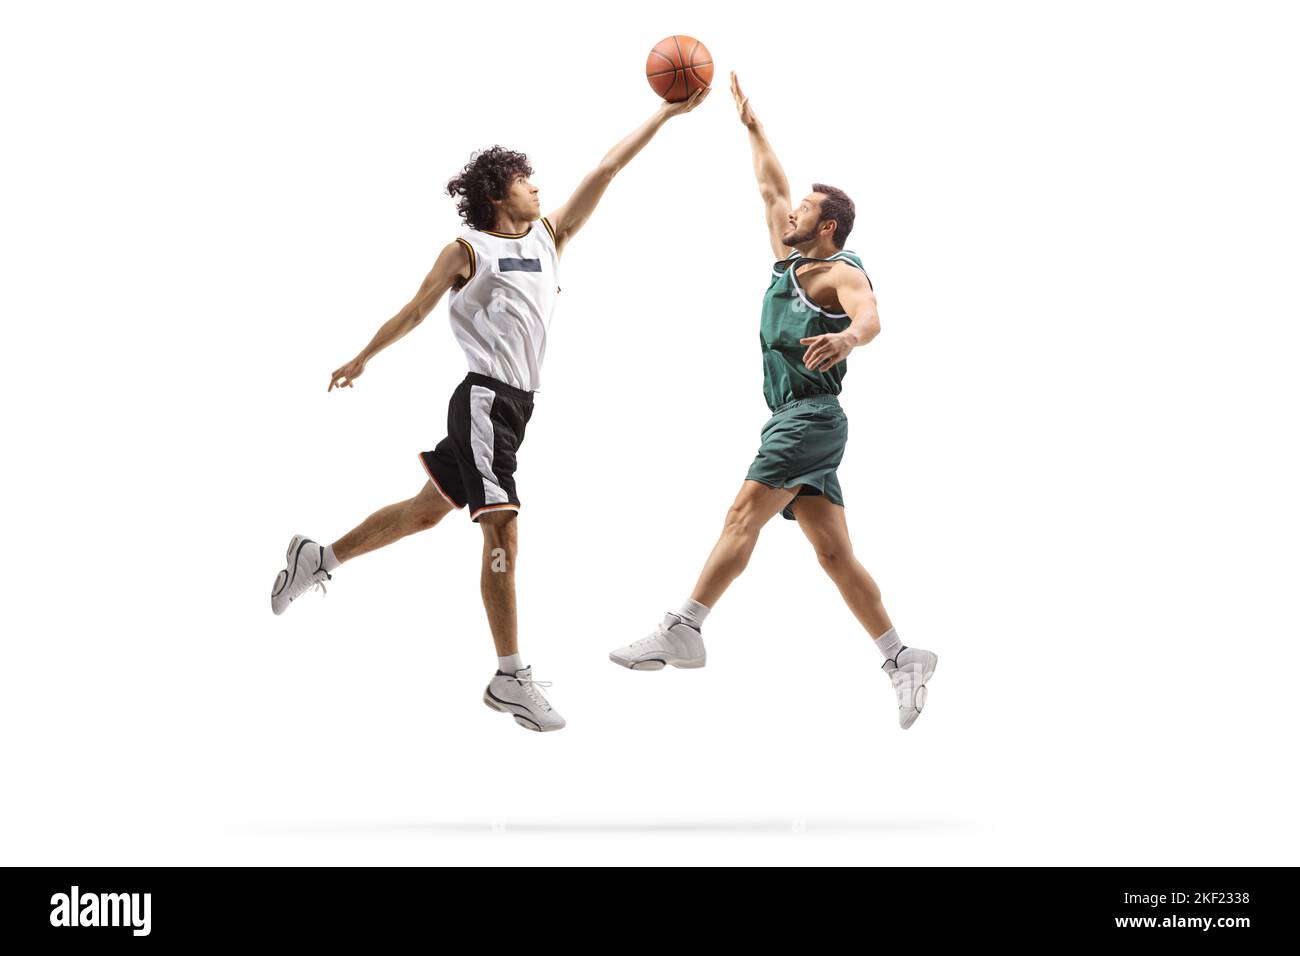 Professional athletes playing basketball isolated on white background Stock Photo